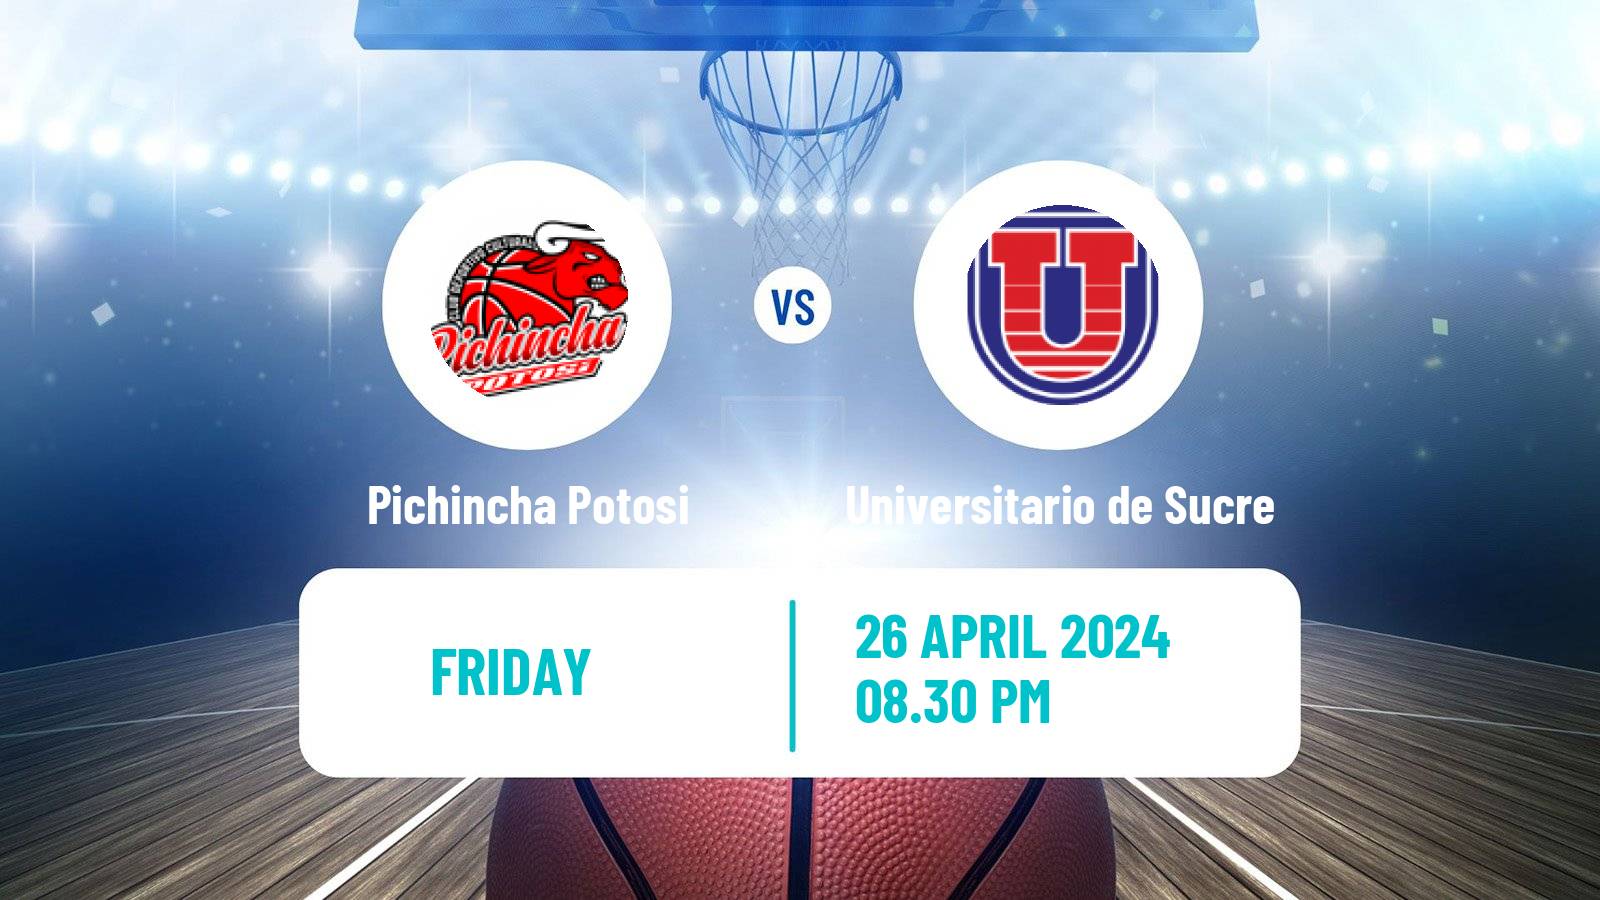 Basketball Bolivian Libobasquet Pichincha Potosi - Universitario de Sucre